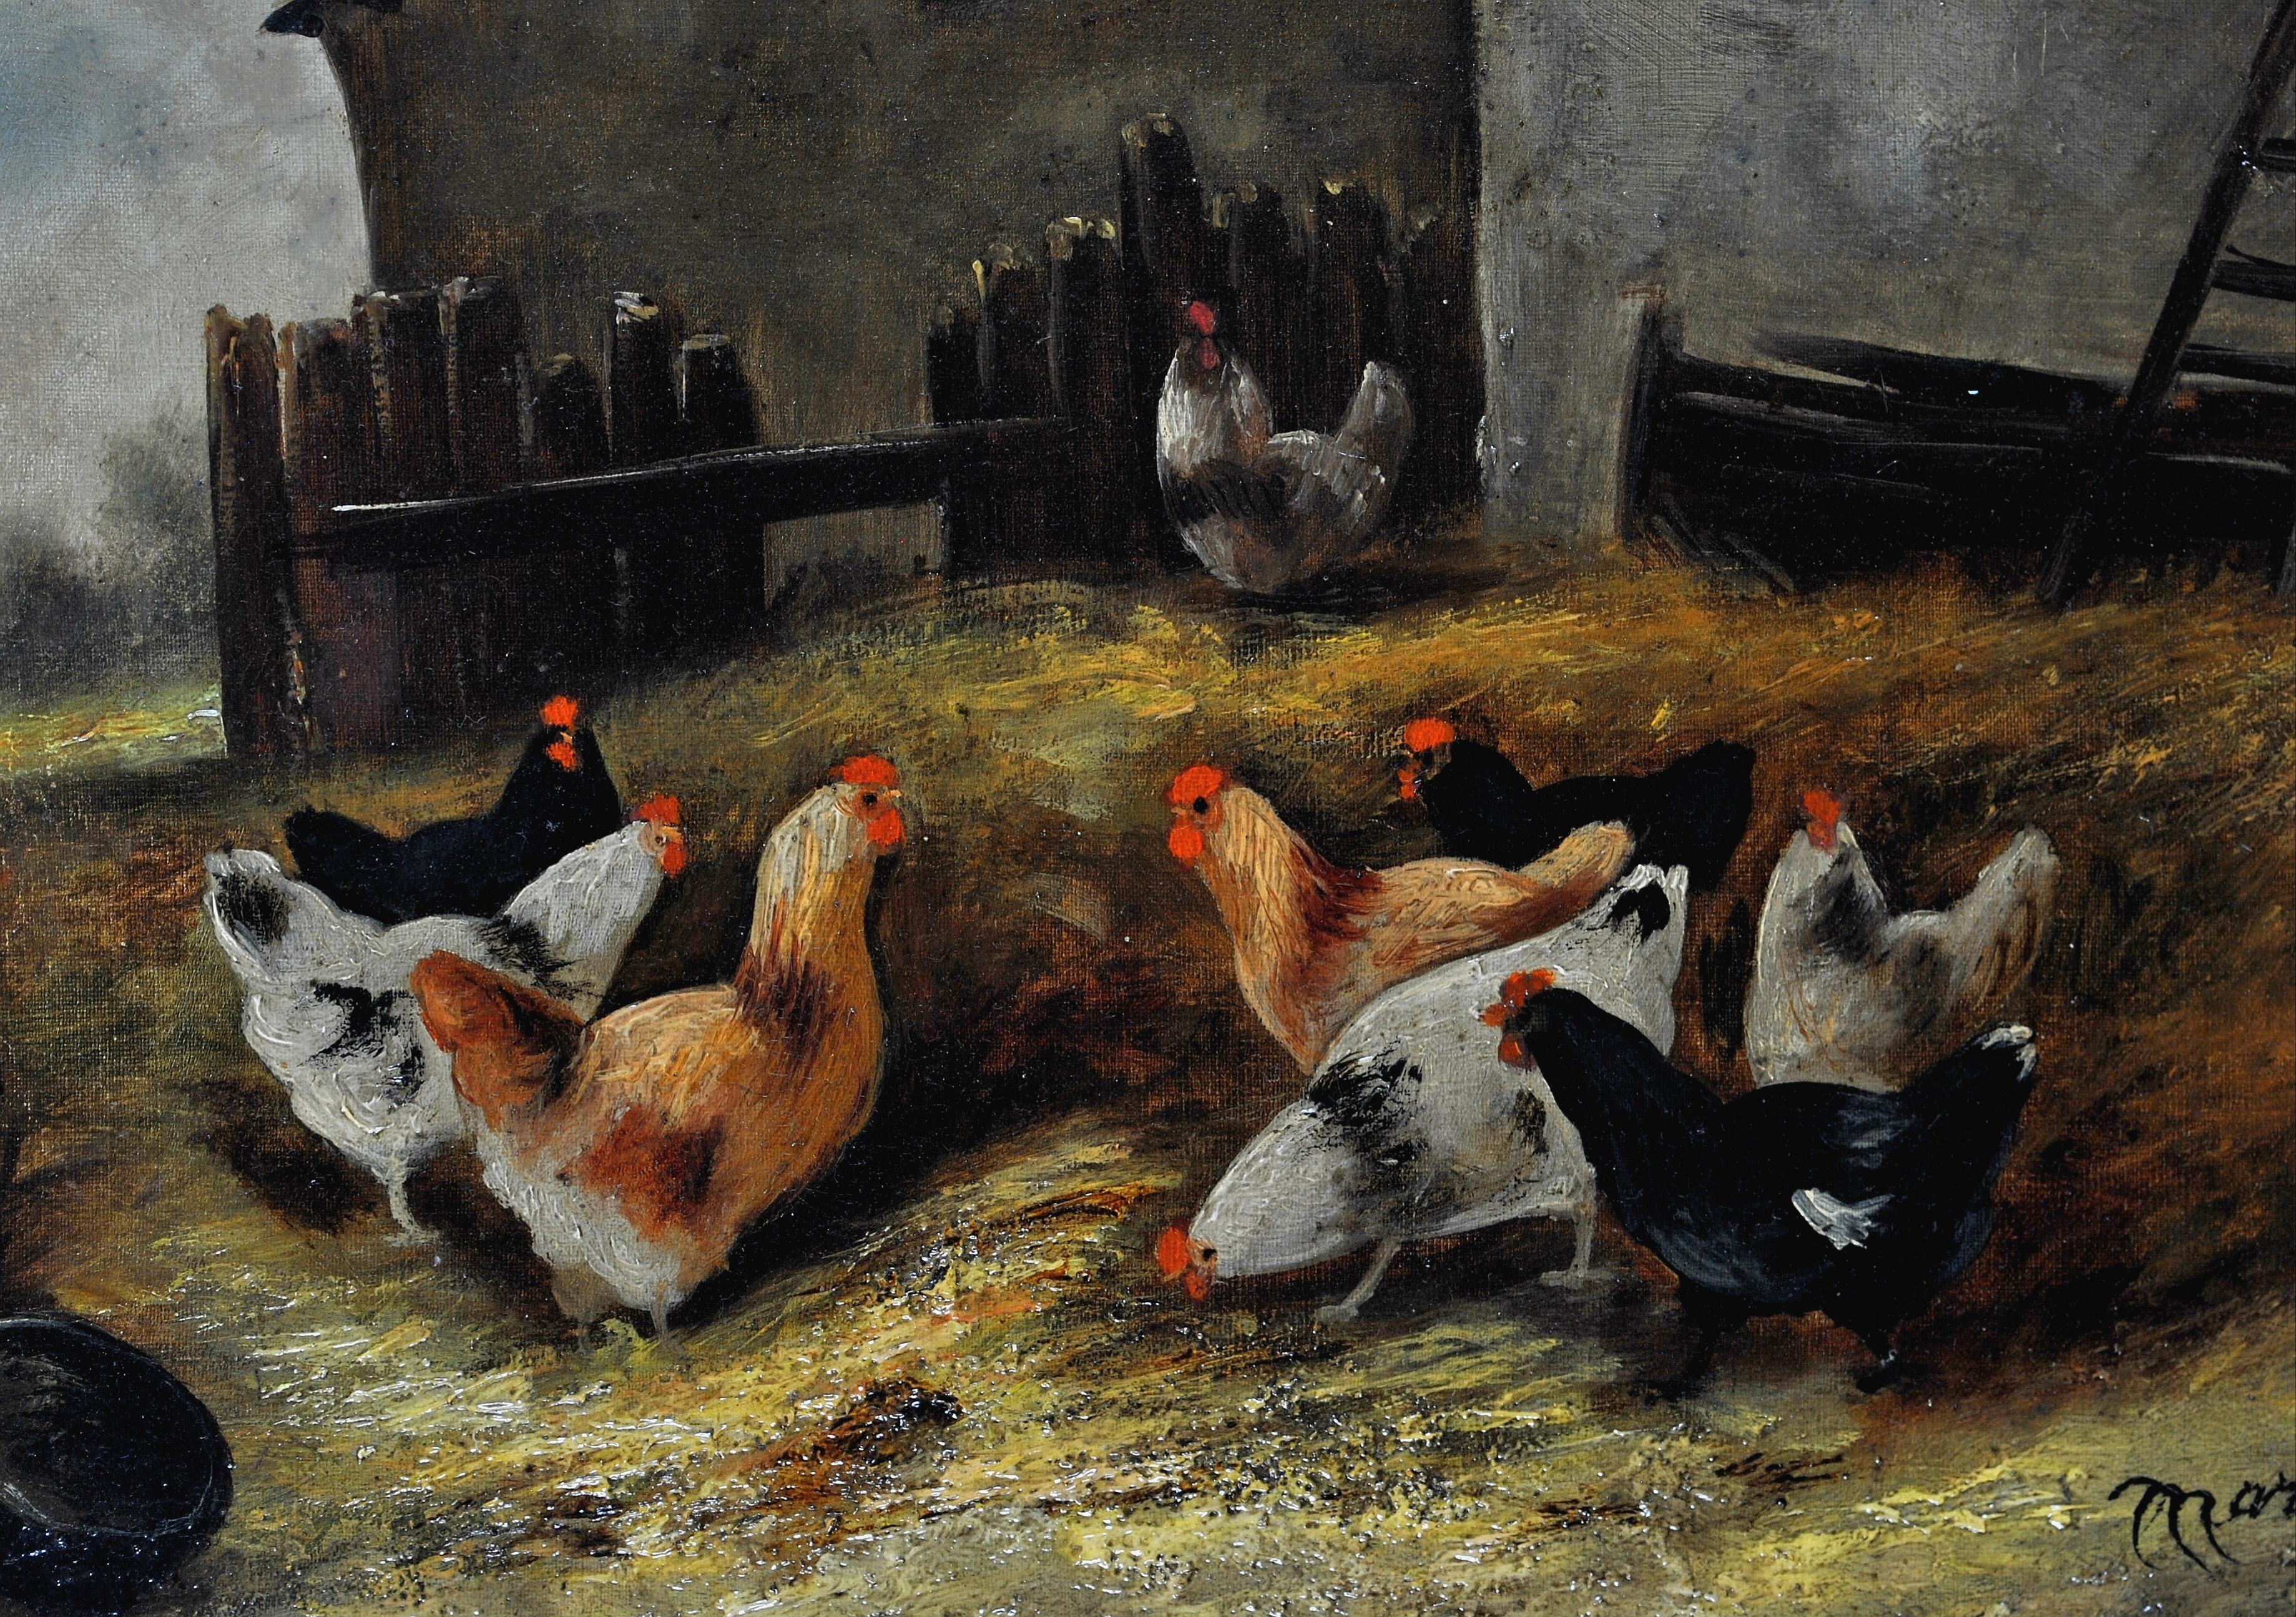 Belle et grande huile sur toile française du 19ème siècle représentant des poulets dans une basse-cour, par Charles Marechal. Travail d'excellente qualité, présenté dans son cadre d'origine en chêne avec décor en gesso doré. Signé en bas à